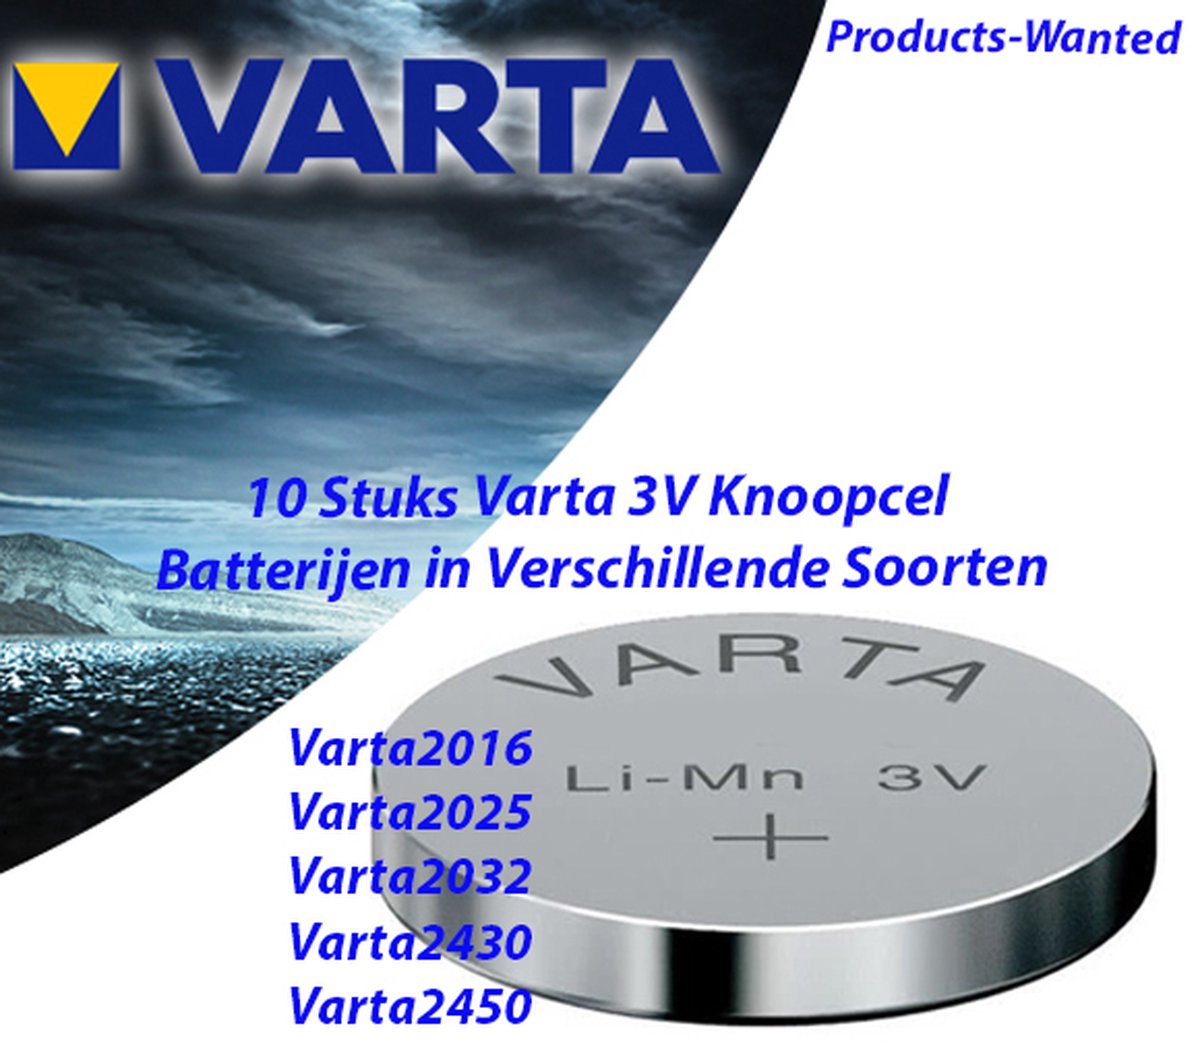 10 Stuks Varta 3V Knoopcel Batterijen in Verschillende Soorten